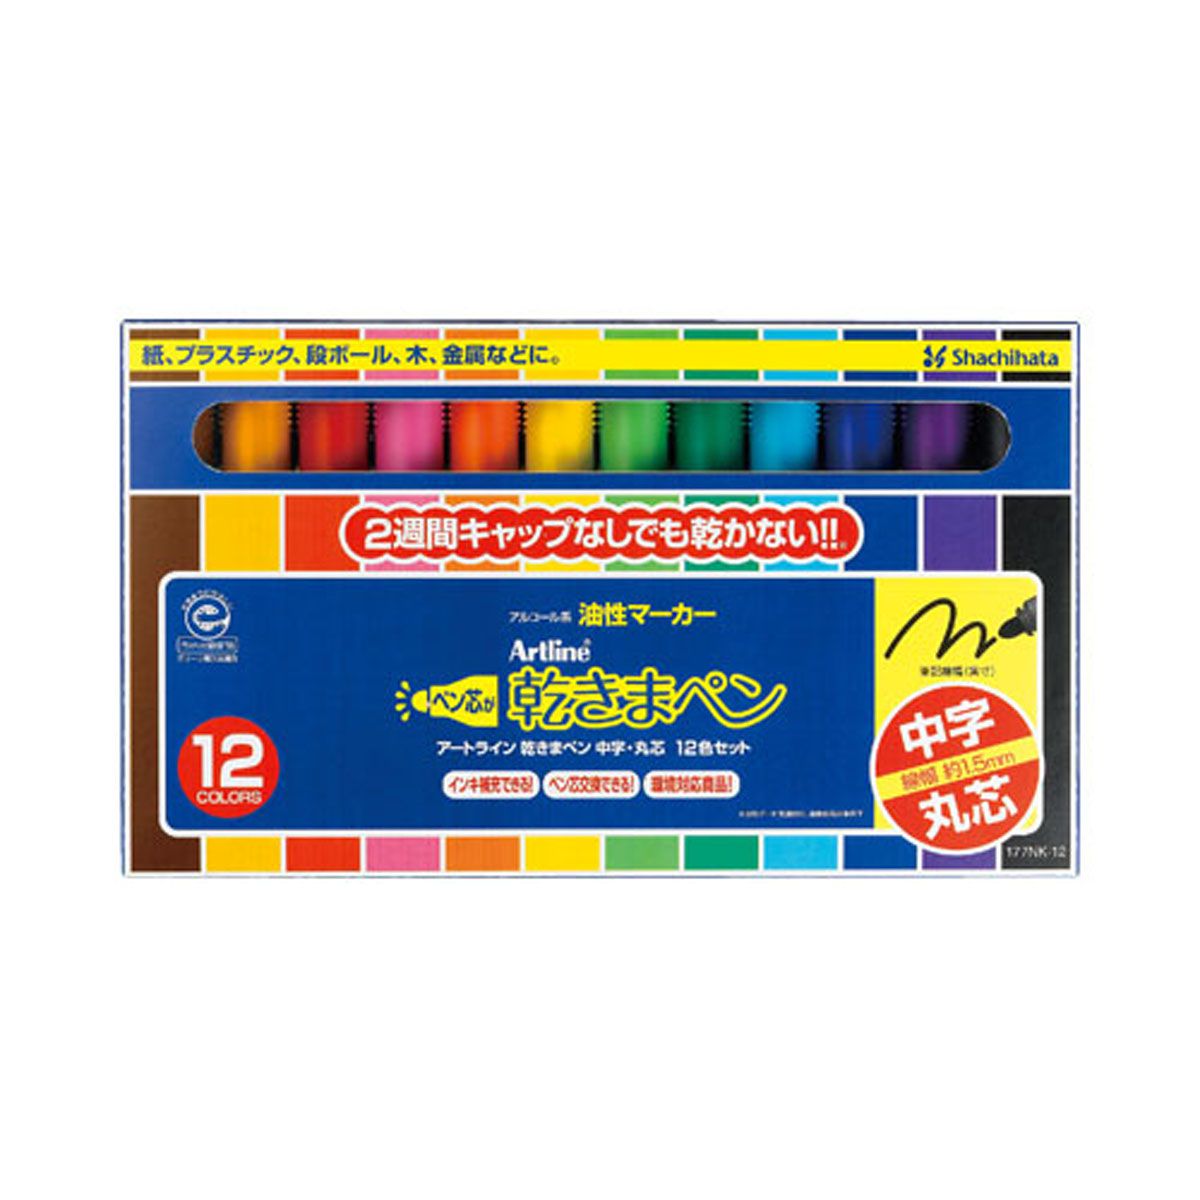 乾きまペン 油性マーカー 中字・丸芯 12色セット 紙ケース_1